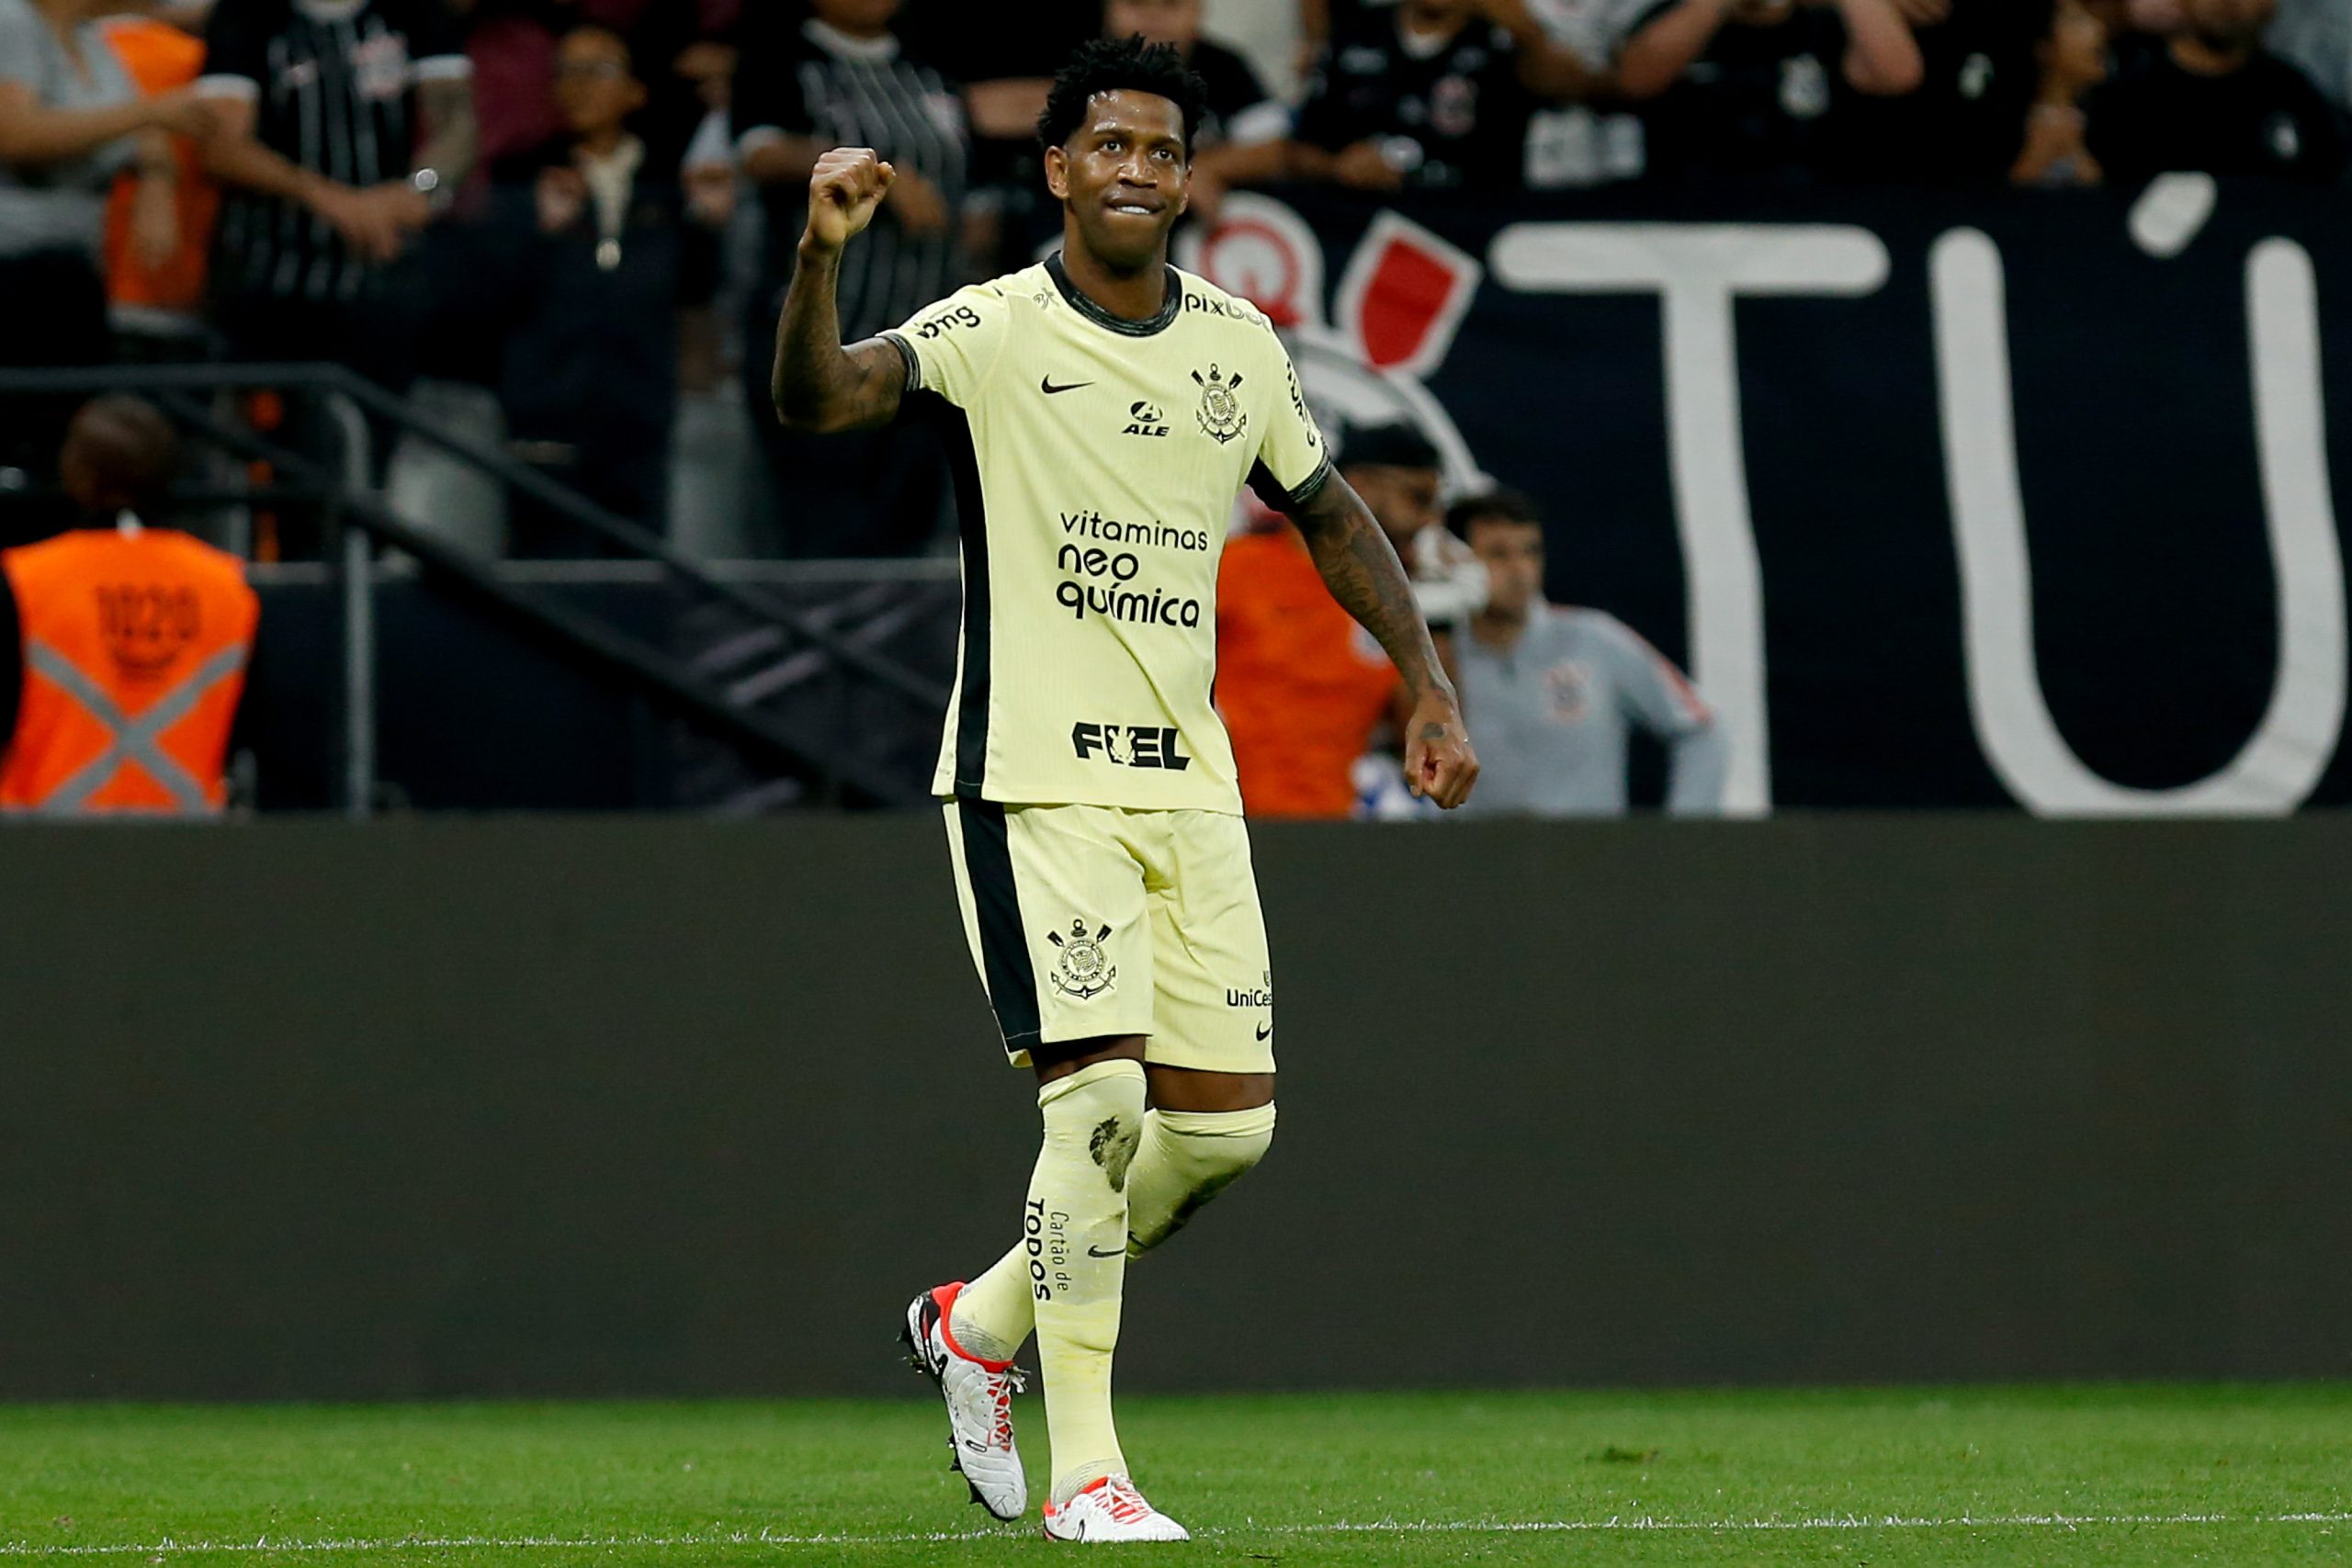 Gil comemora gol marcado contra o Botafogo (Photo by Ricardo Moreira/Getty Images)